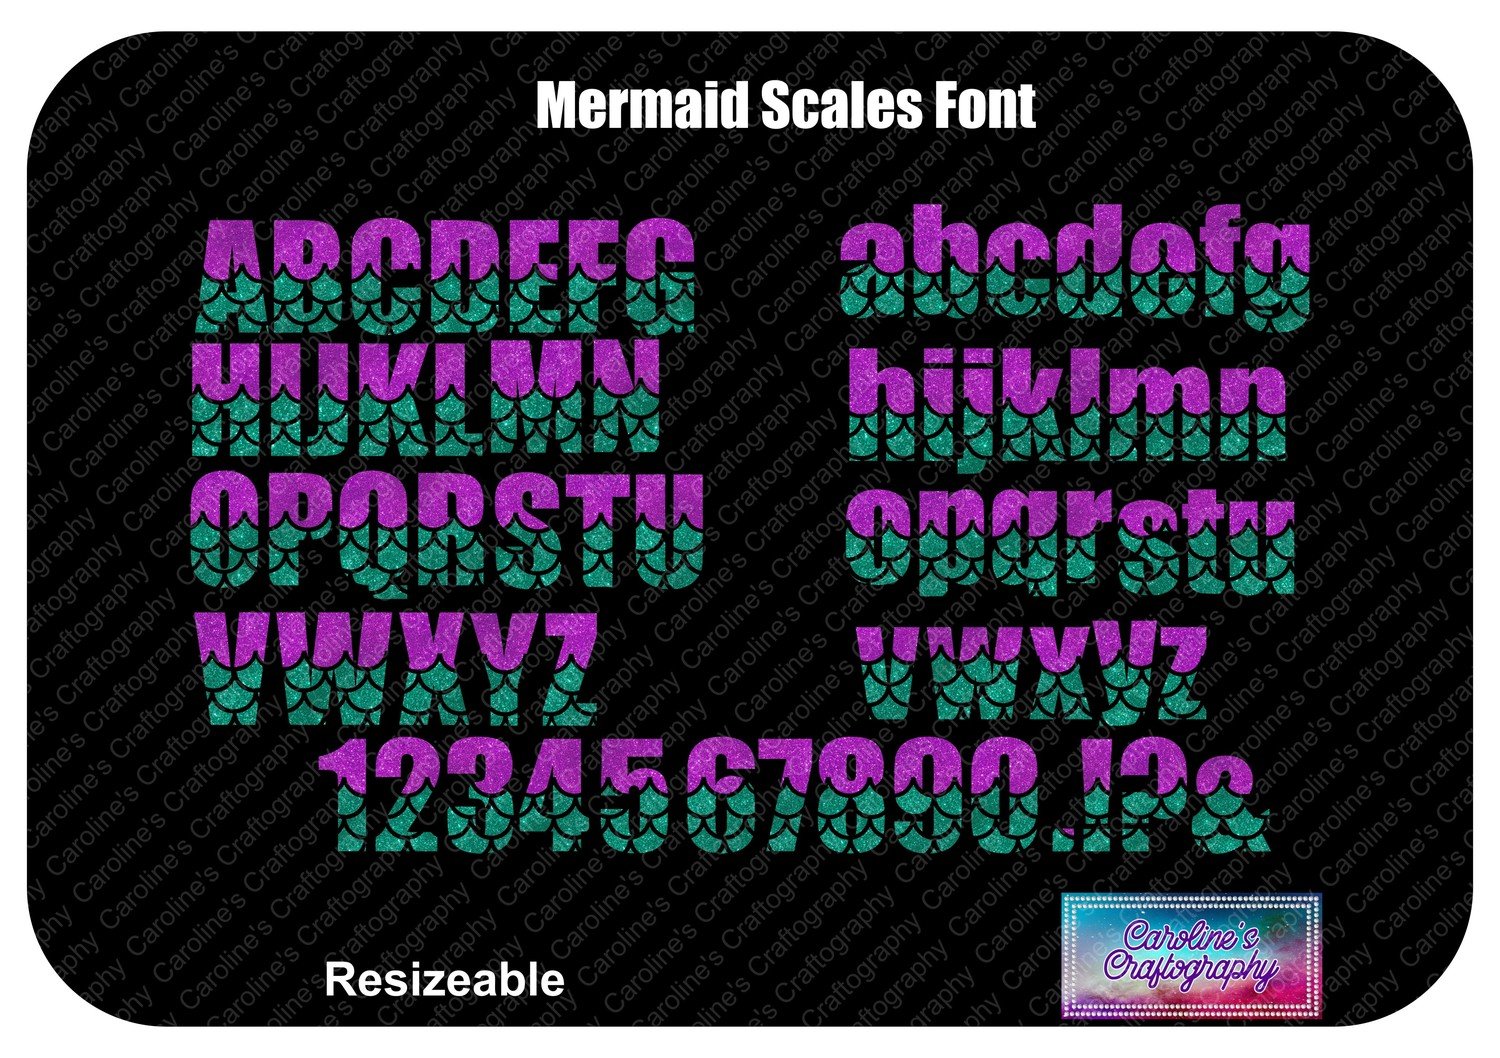 Mermaid Scales Font Vinyl